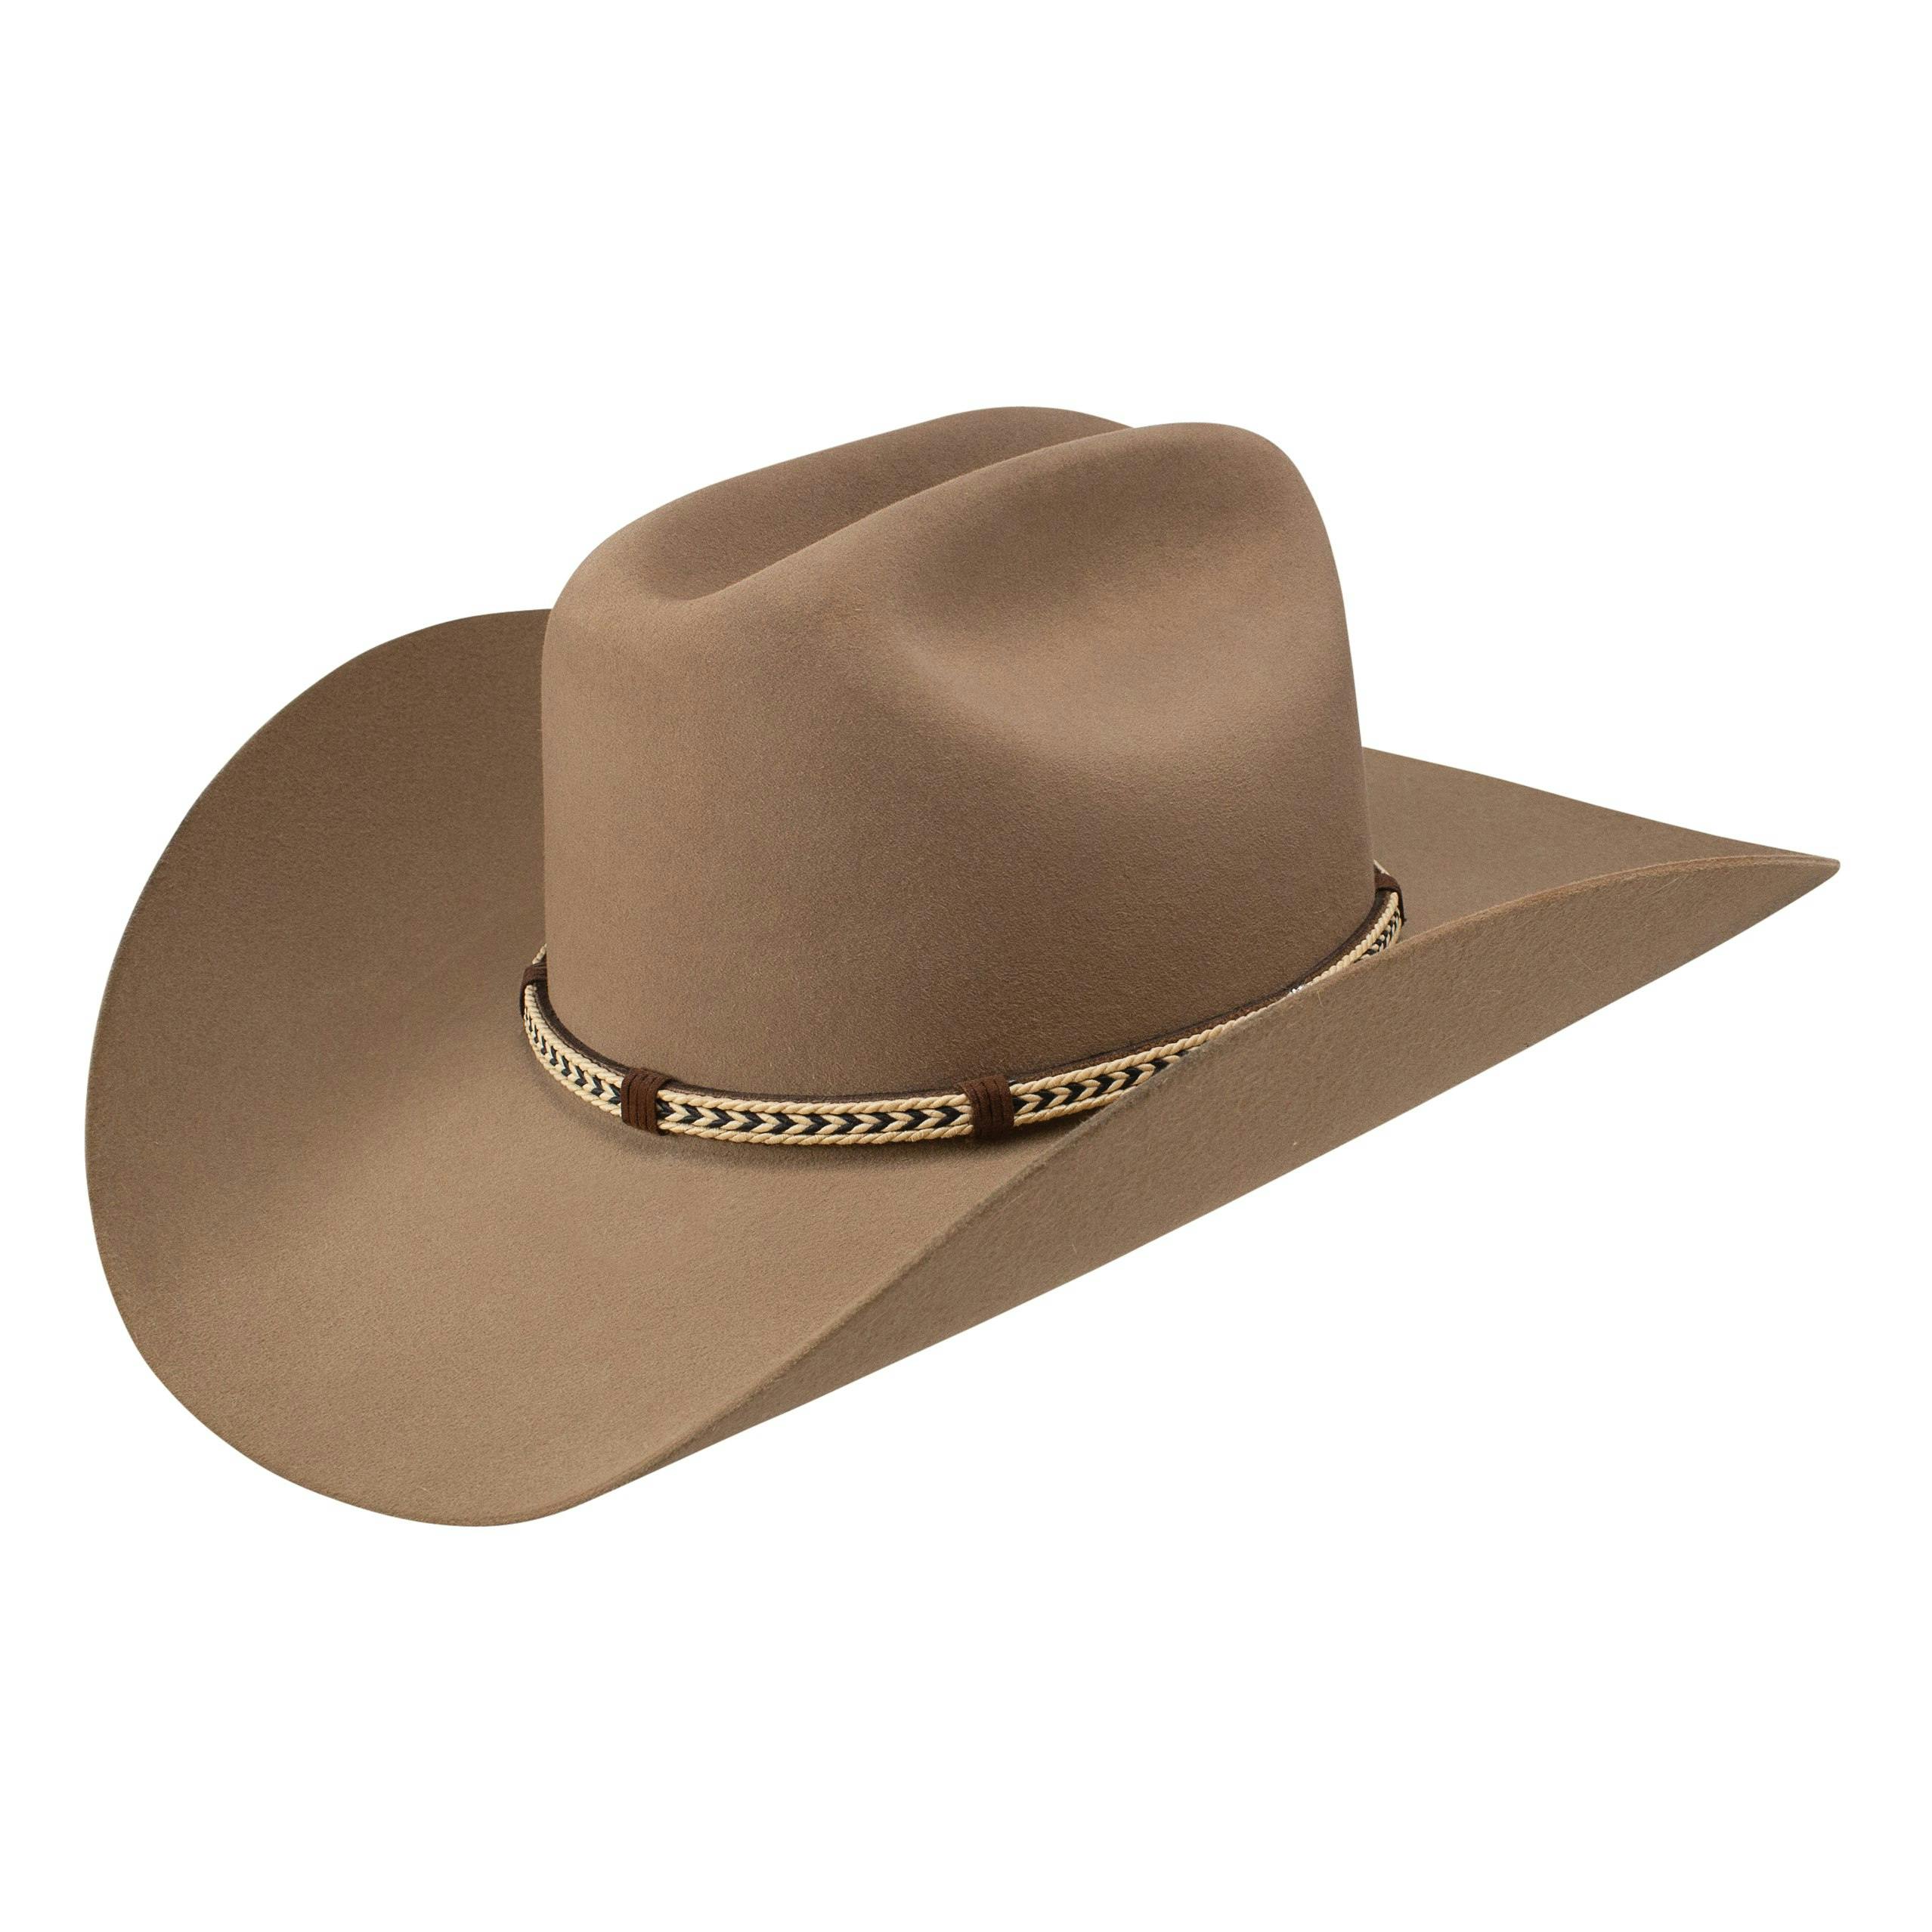 The Centennial Western Hat